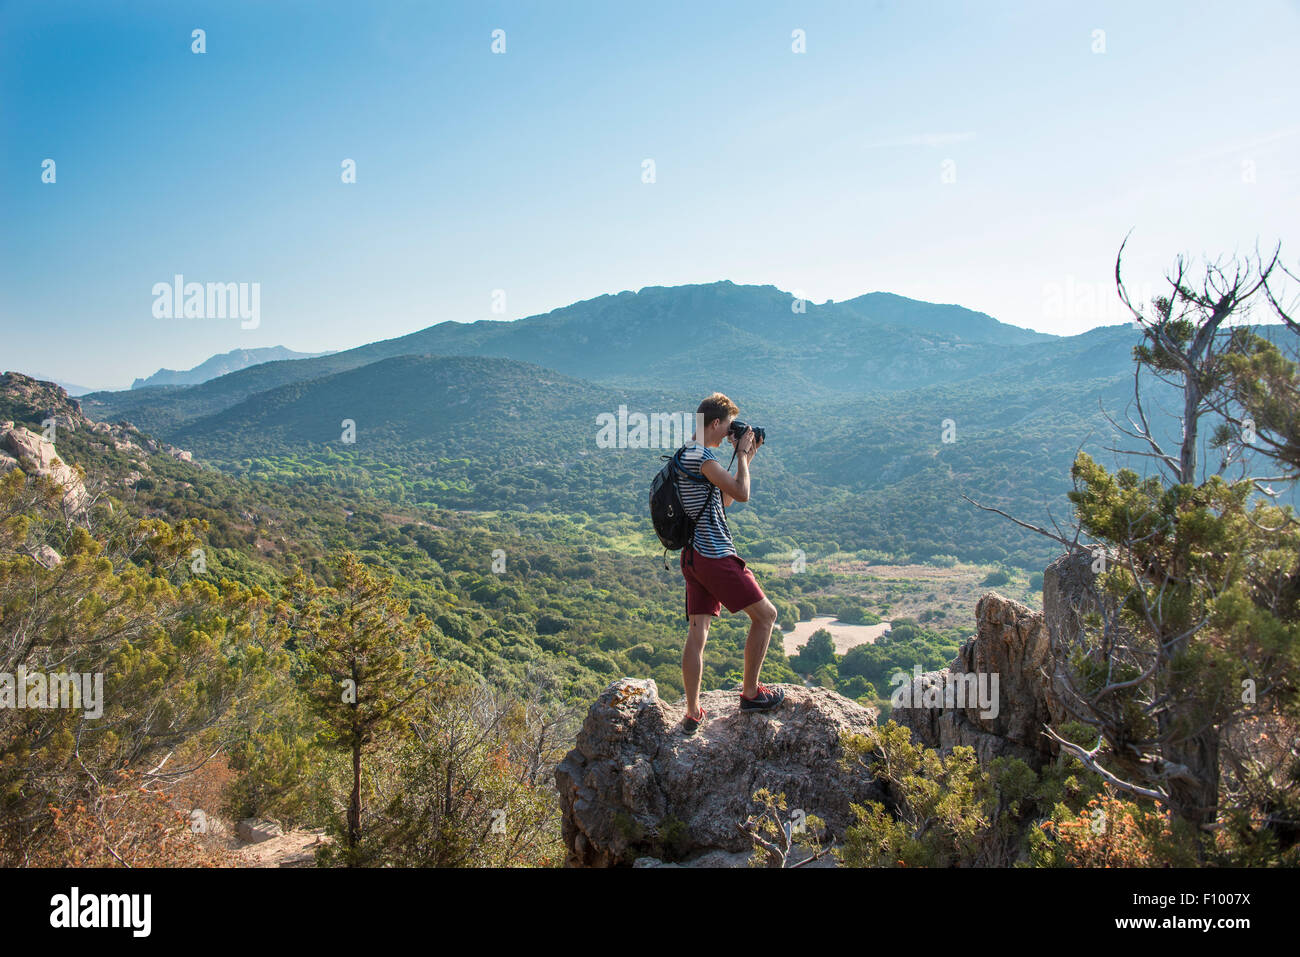 Jeune homme faisant la photographie de paysage de la région montagneuse de vues à Sartène, Corse, France Banque D'Images